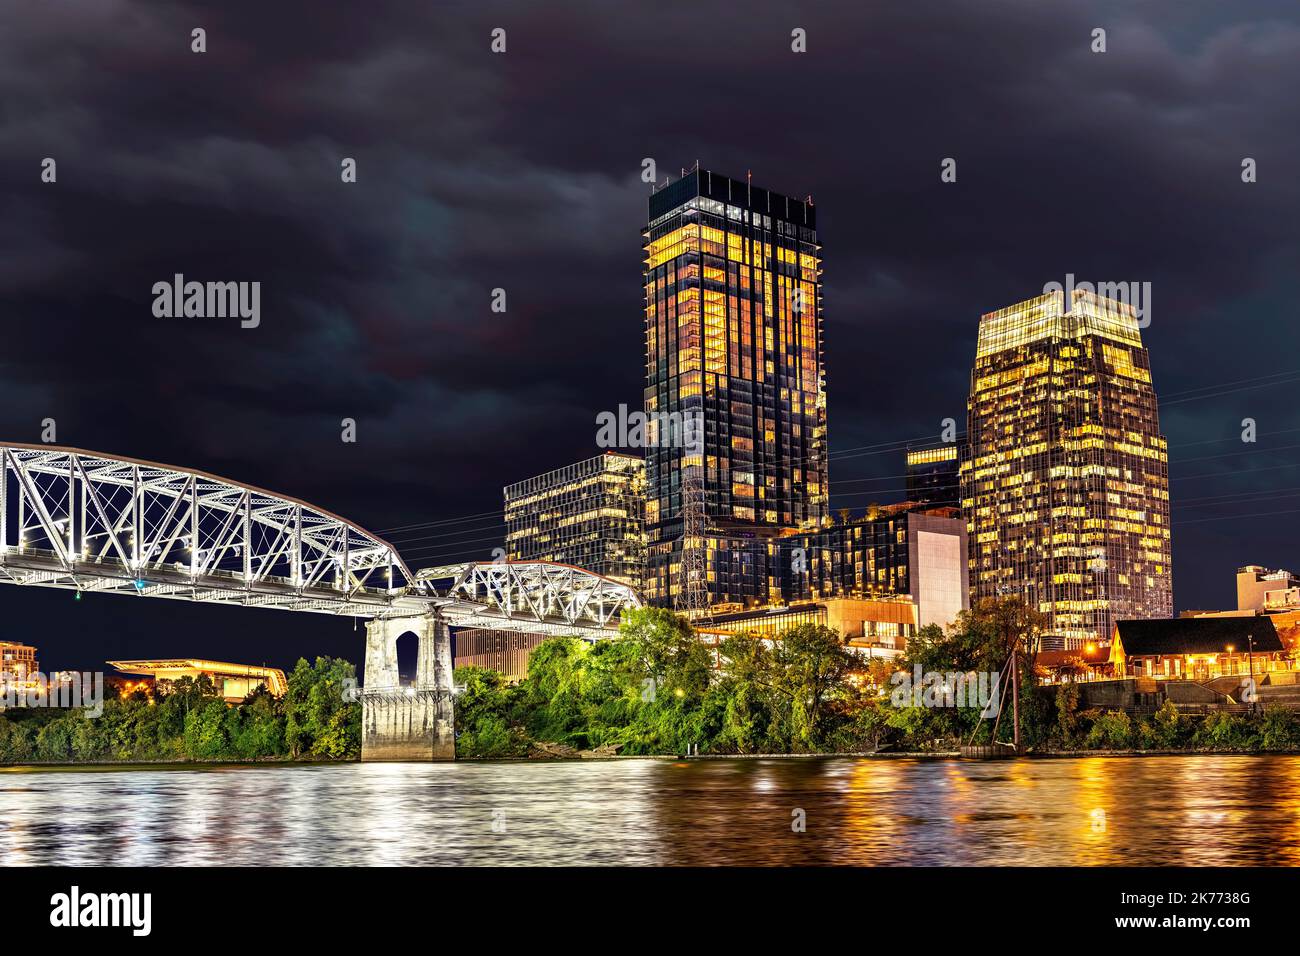 Magnifique image du célèbre pont piétonnier du centre-ville de Nashville sur le bord de la rivière montrant l'attraction touristique historique encadrée par un ciel nuageux à n Banque D'Images